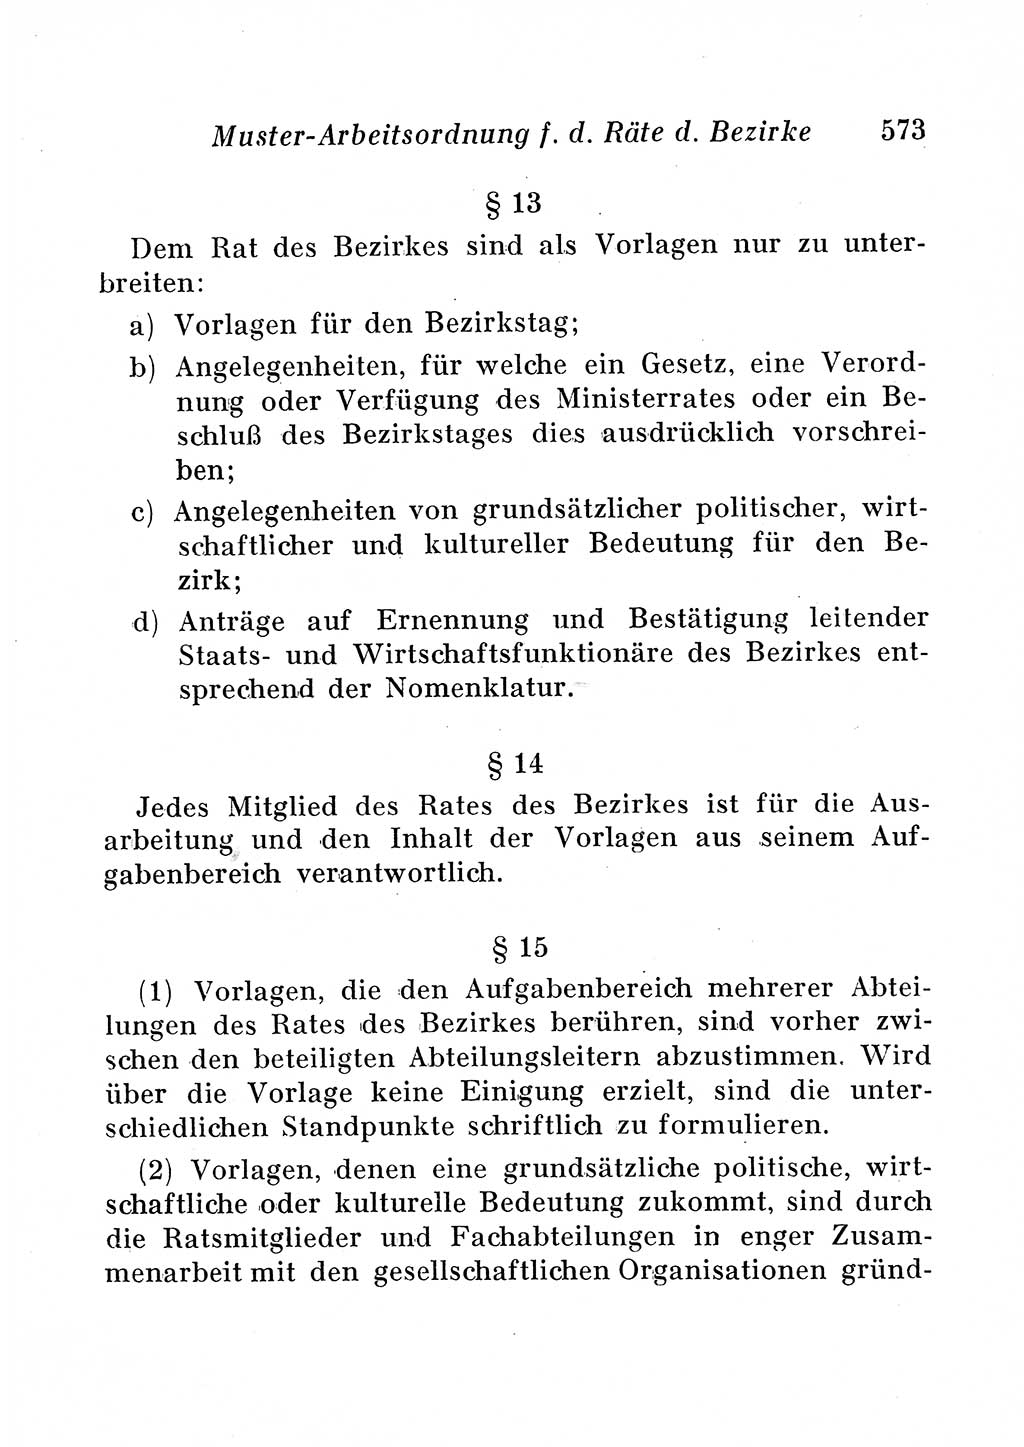 Staats- und verwaltungsrechtliche Gesetze der Deutschen Demokratischen Republik (DDR) 1958, Seite 573 (StVerwR Ges. DDR 1958, S. 573)